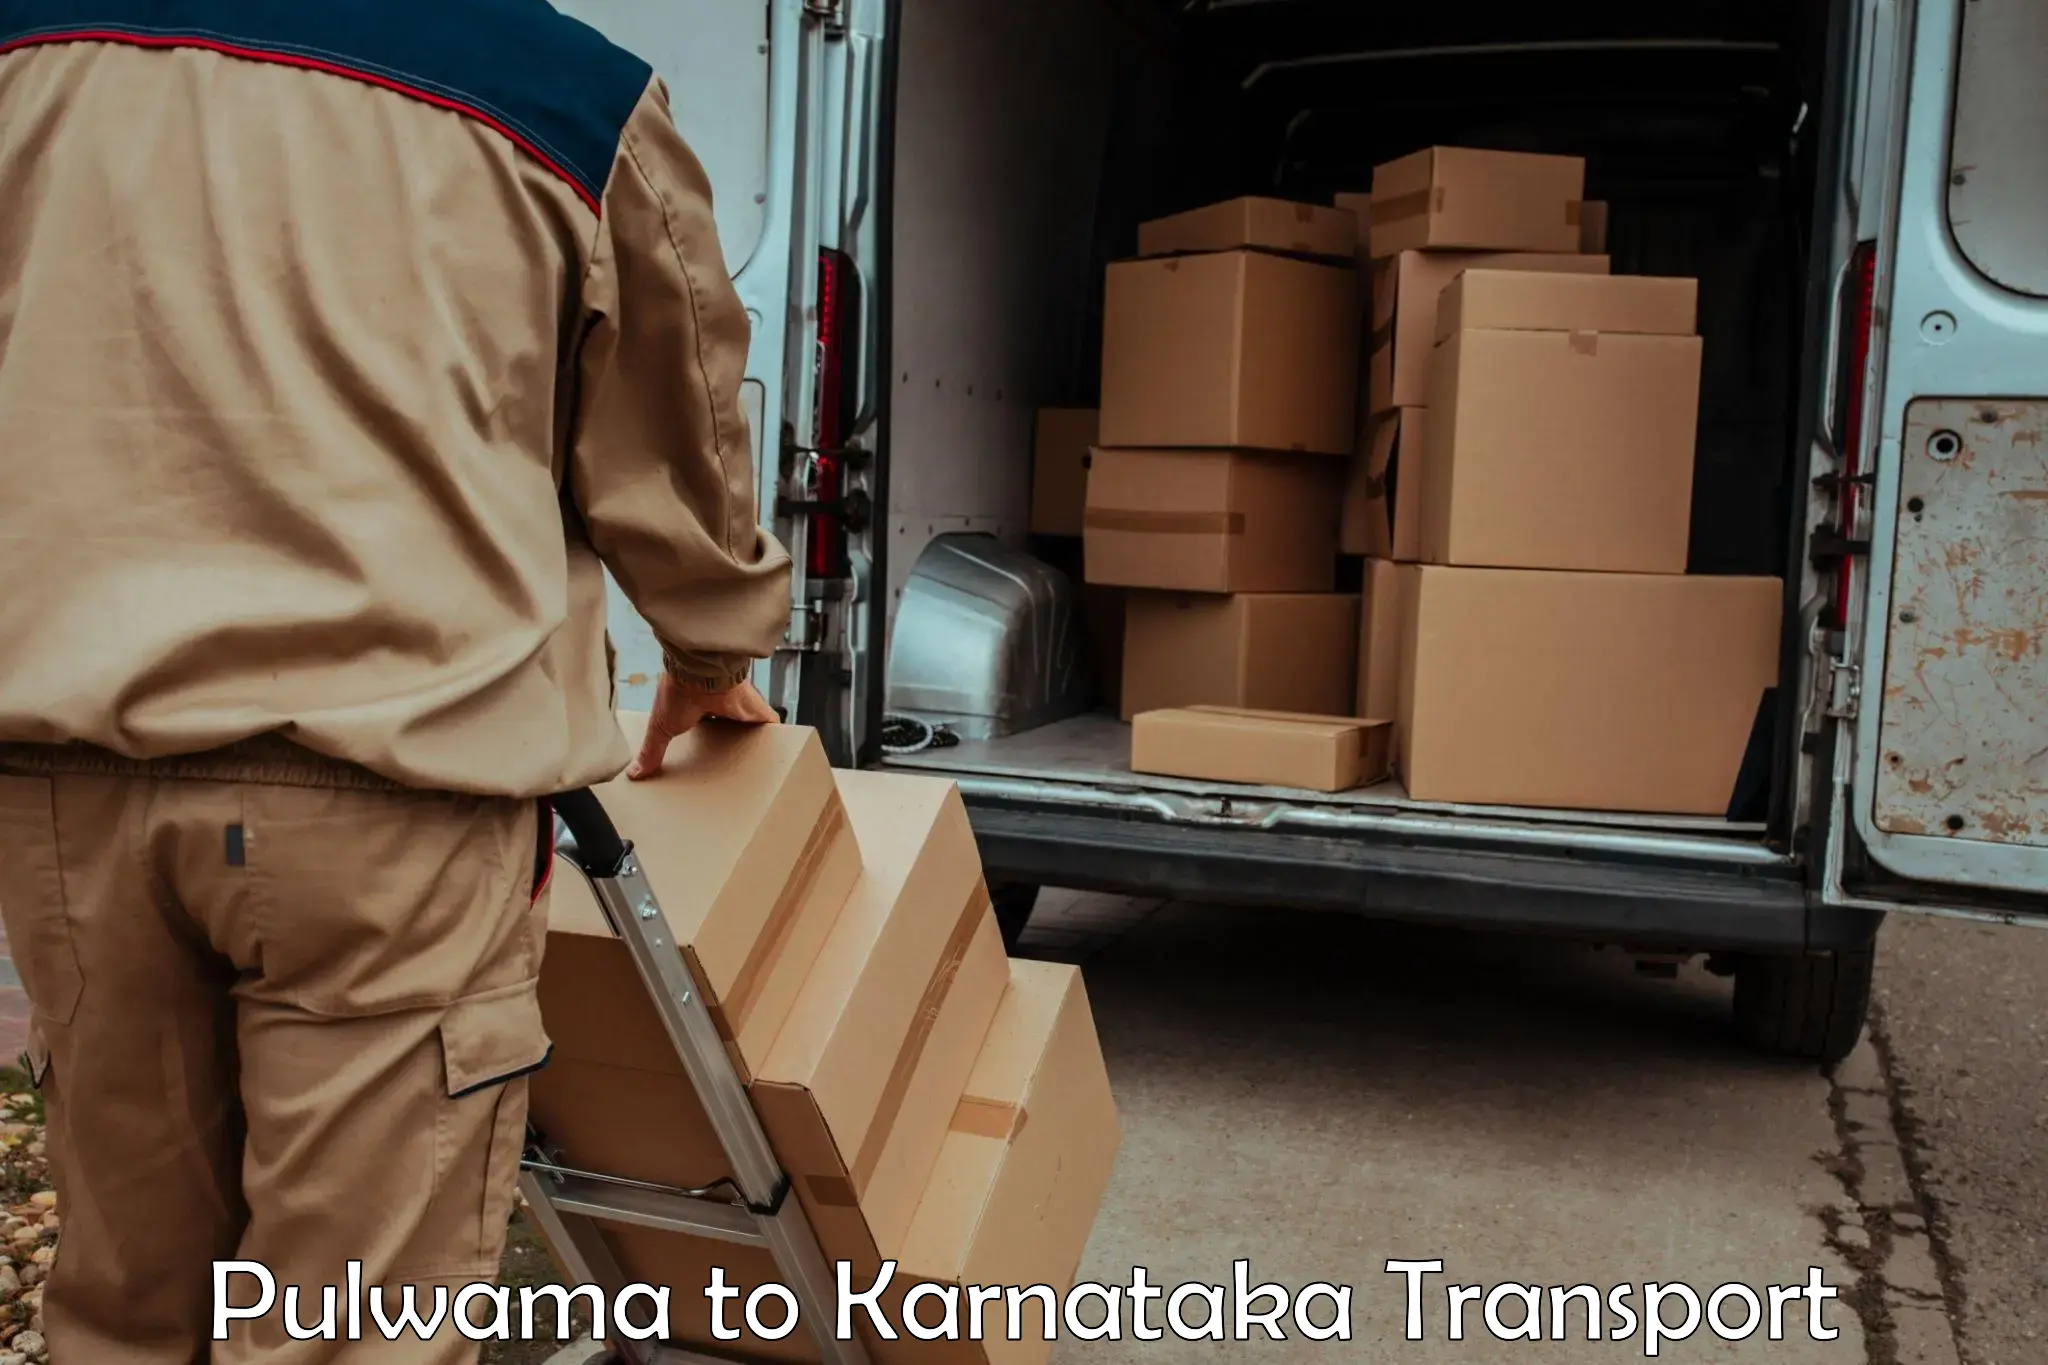 Luggage transport services Pulwama to Kanjarakatte